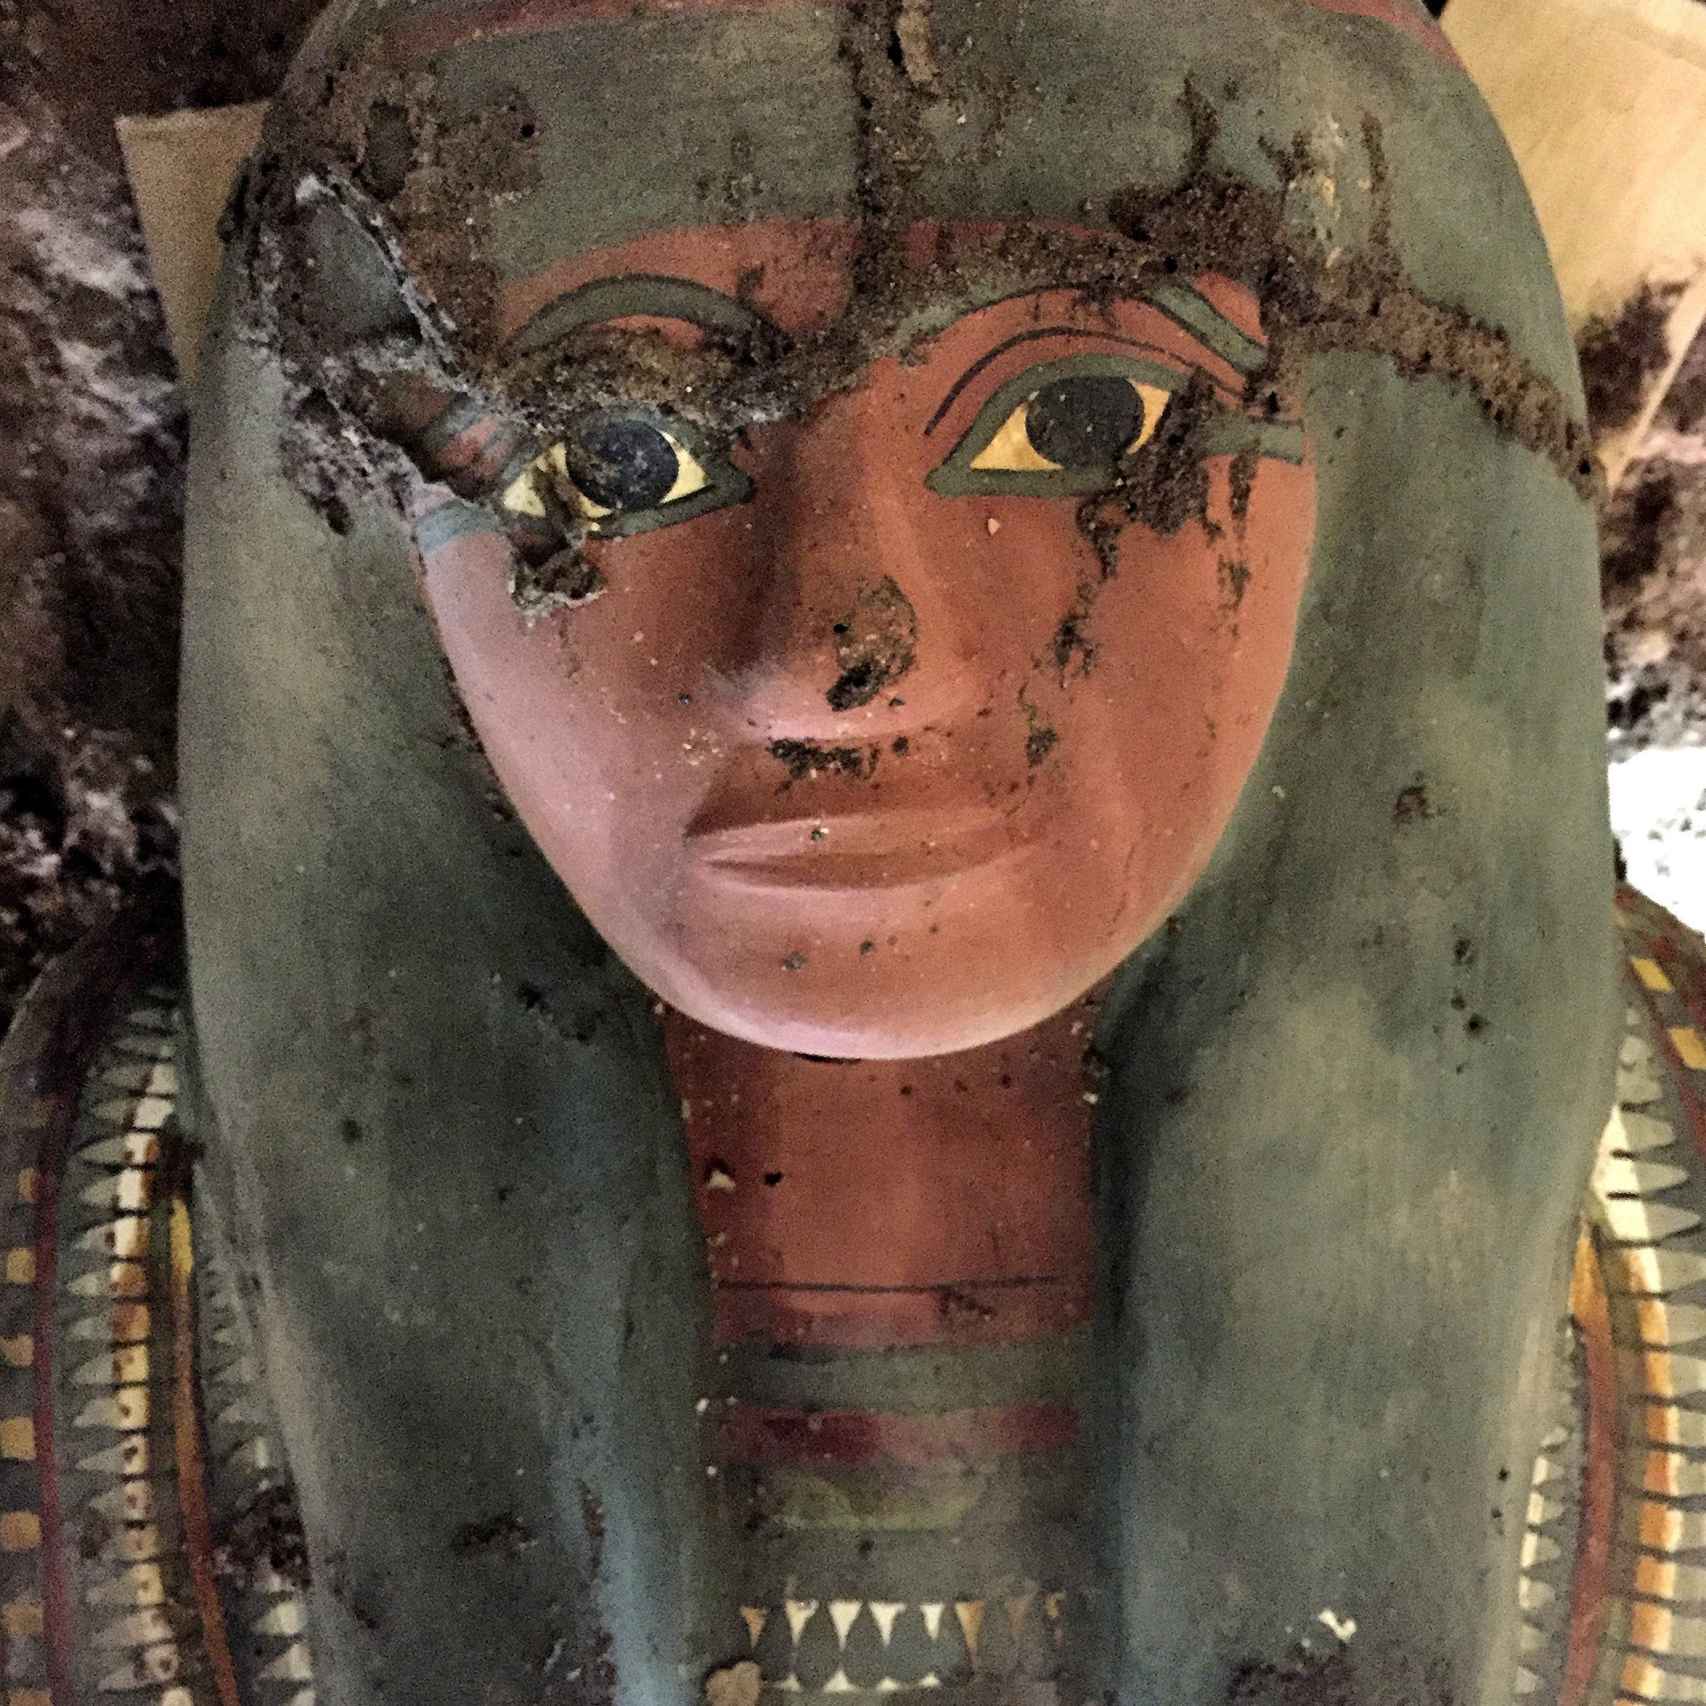 Fotografía facilitada por el Departamento de Antigüedades de Egipto del cartonaje policromado y decorado con motivos religiosos del antiguo egipcio.